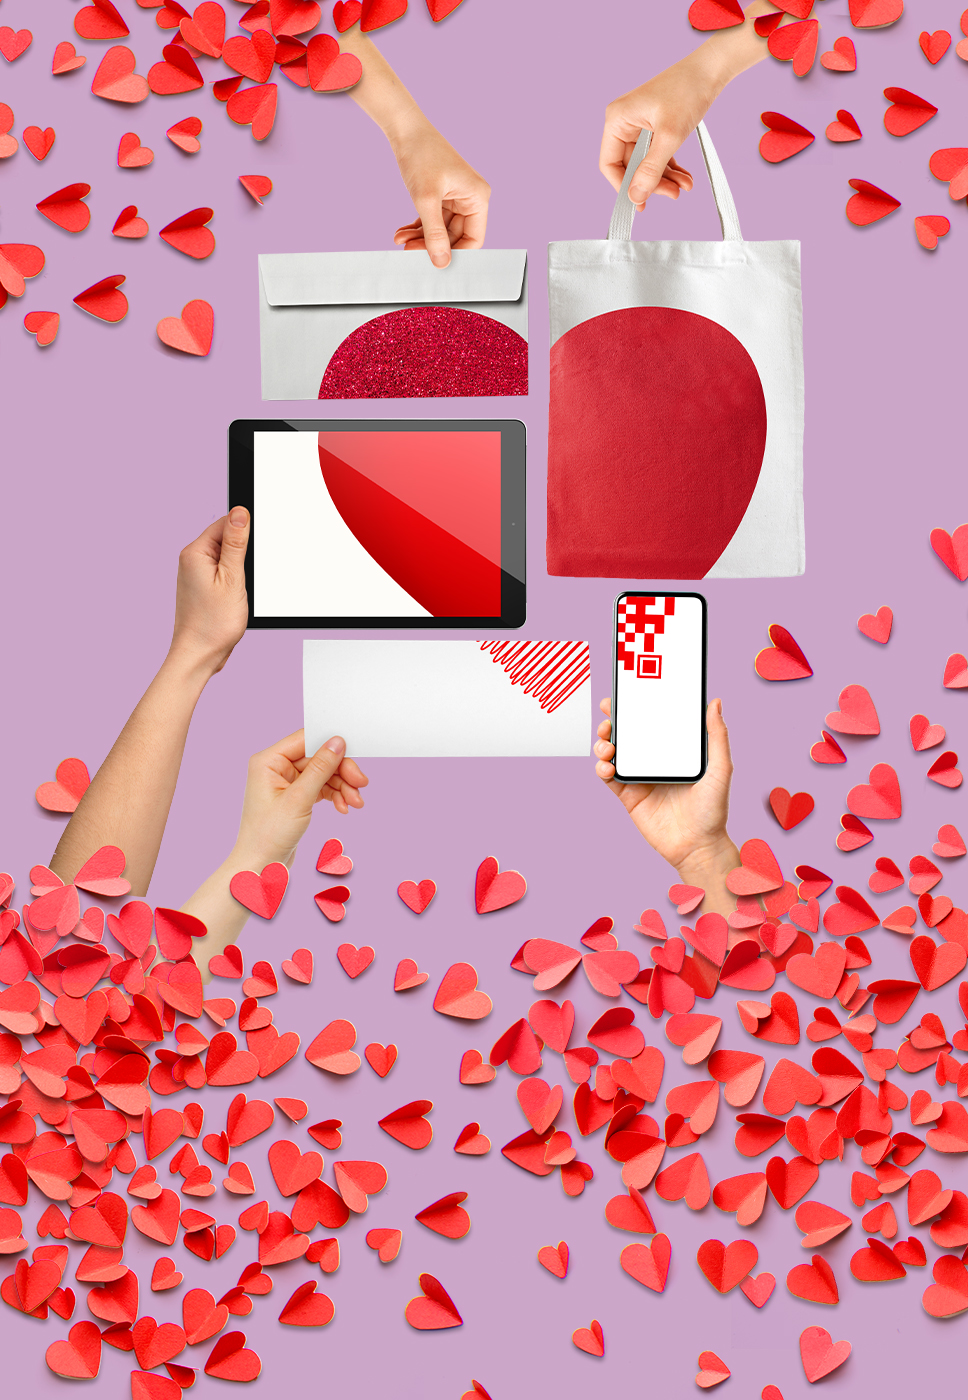 CTT Ads - Soluções de Publicidade para o Dia dos Namorados